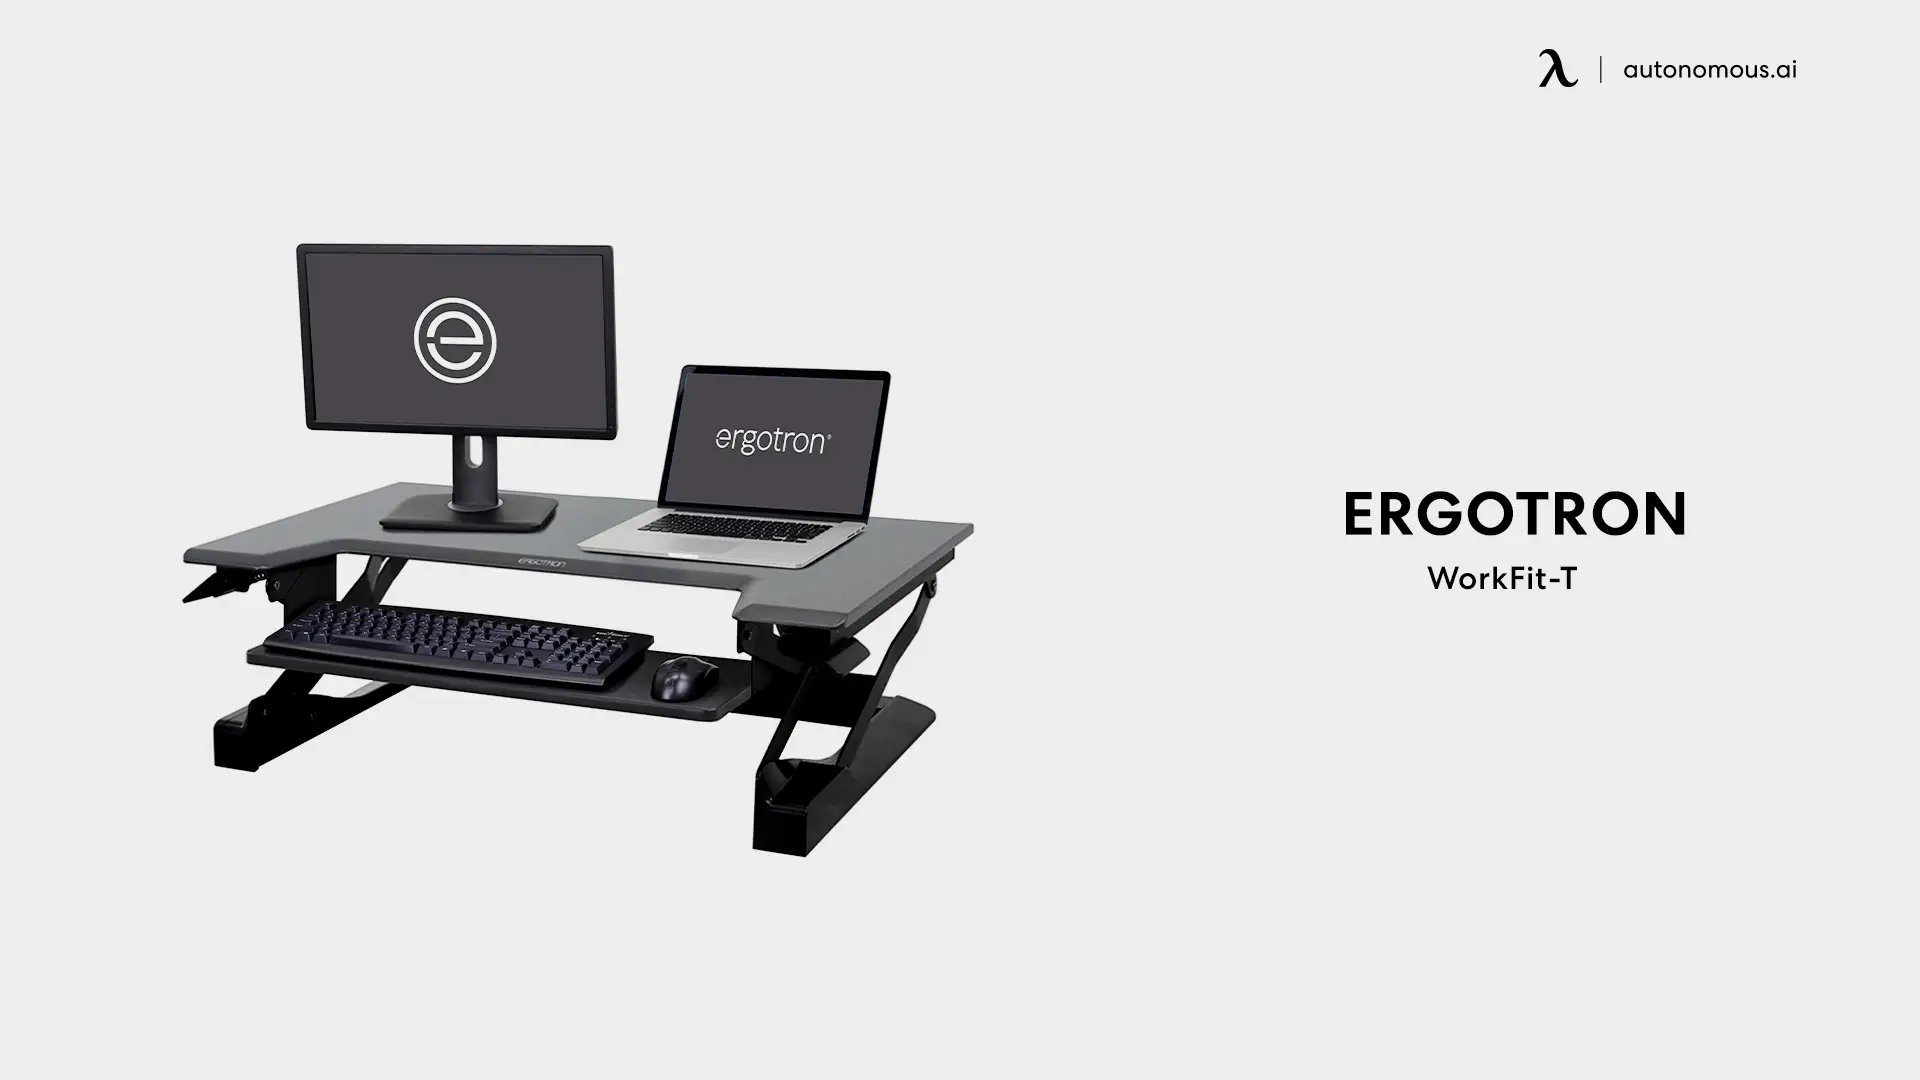 Ergotron WorkFit-T mini desk